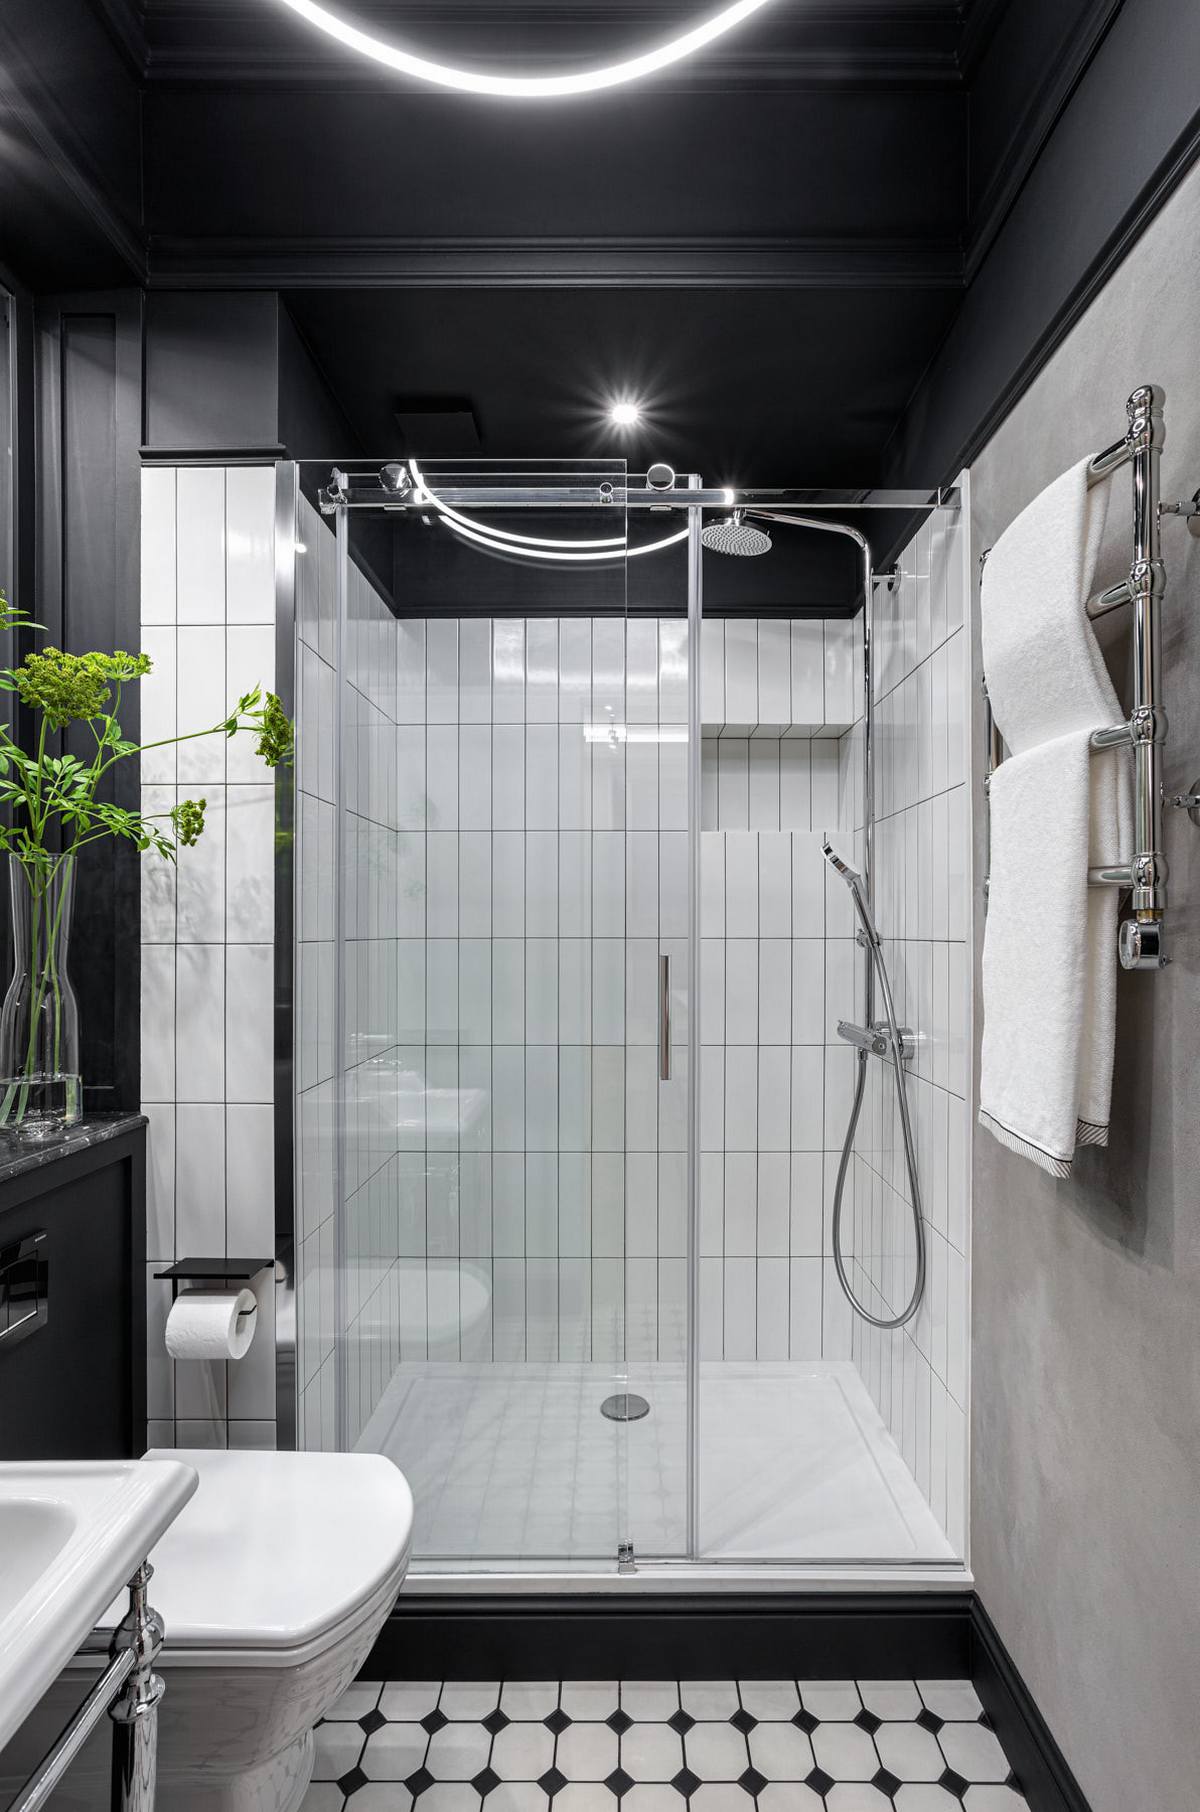 Khu vực phòng tắm vẫn 'trung thành' với hai gam màu đen trắng bằng cách sử dụng sơn trần màu đen, tường ốp gạch trắng và sàn nhà hình ô vuông trắng đen xen kẽ tạo cảm giác tương phản.